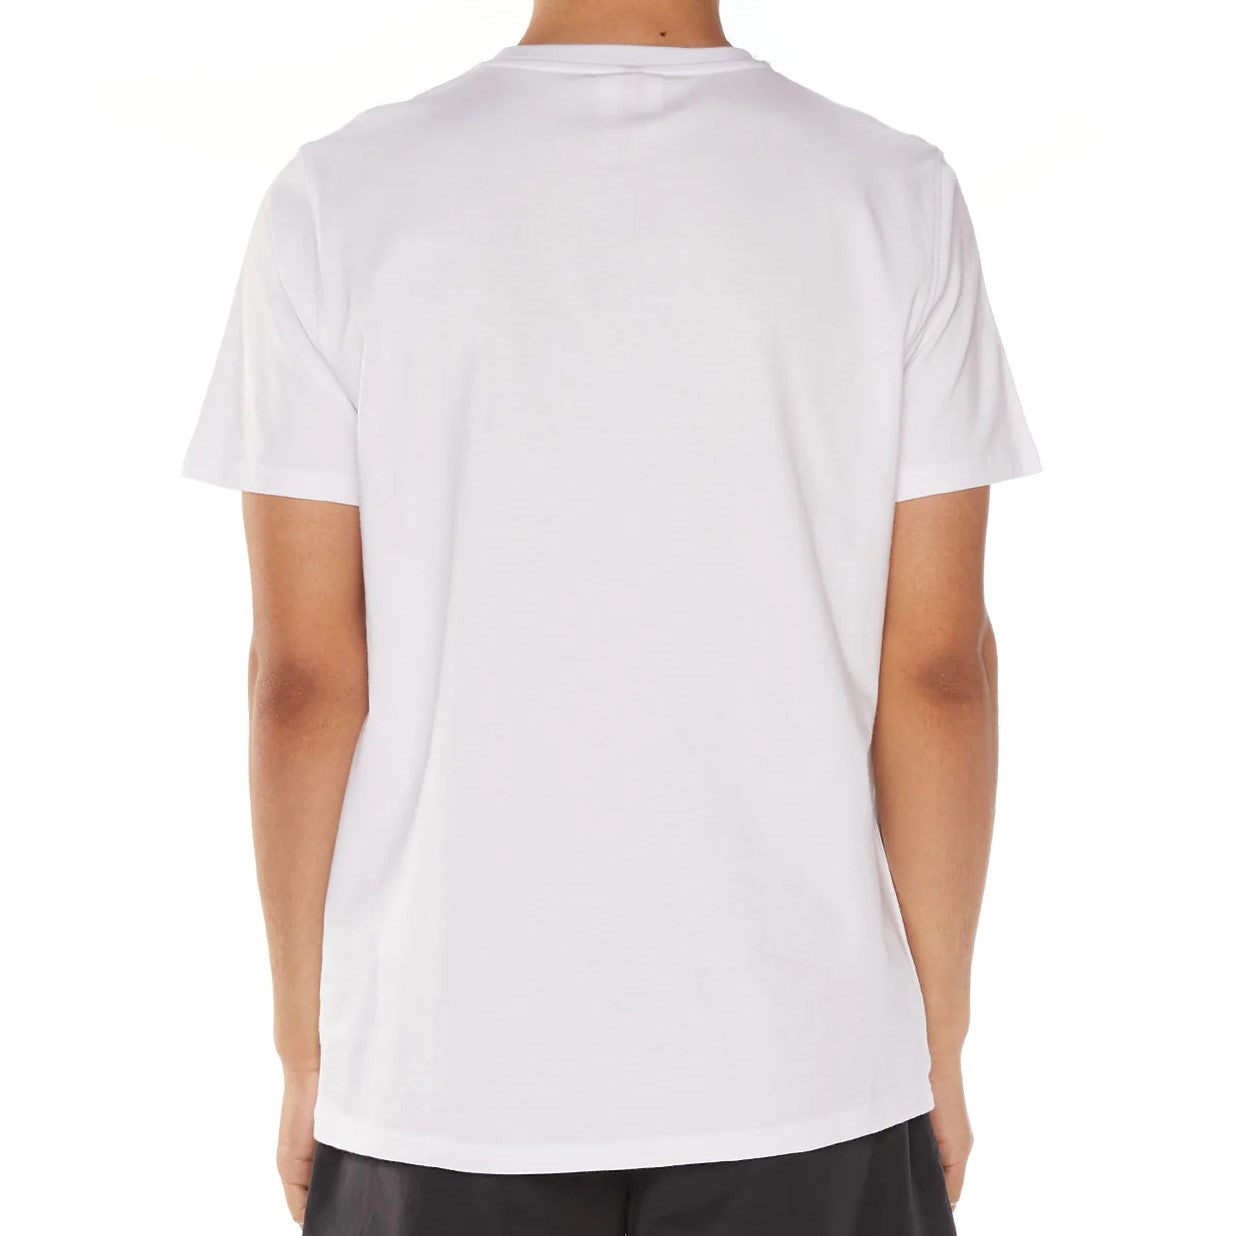 KAPPA Authentic Estessi T-Shirt - White